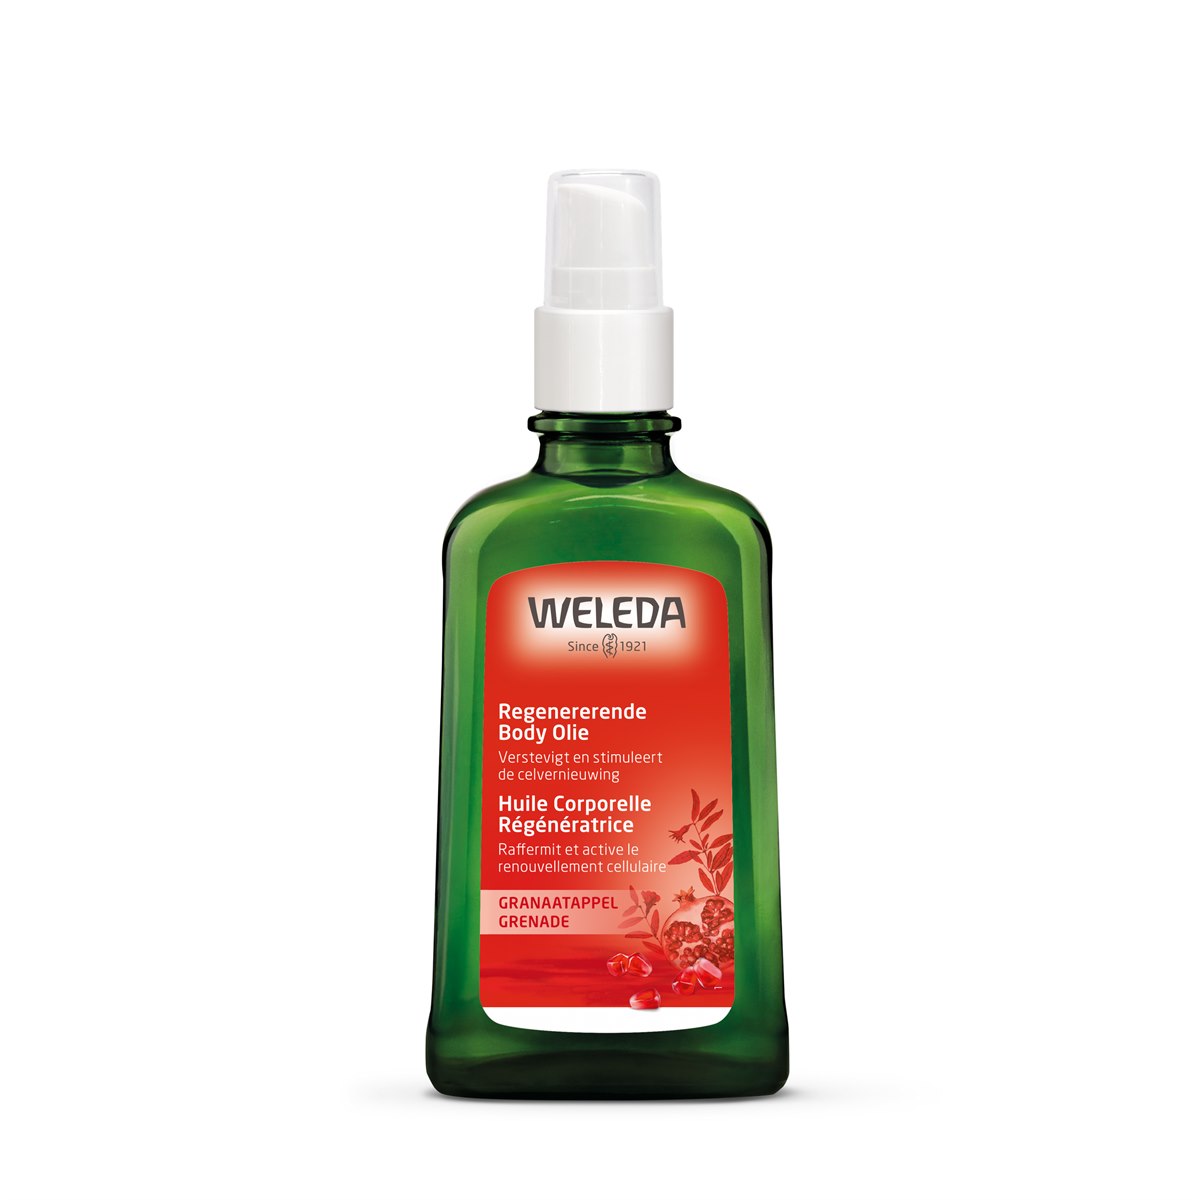 Elke week Ongunstig Appal Granaatappel Regeneratie Body Olie 100 ml Weleda voor de rijpe huid